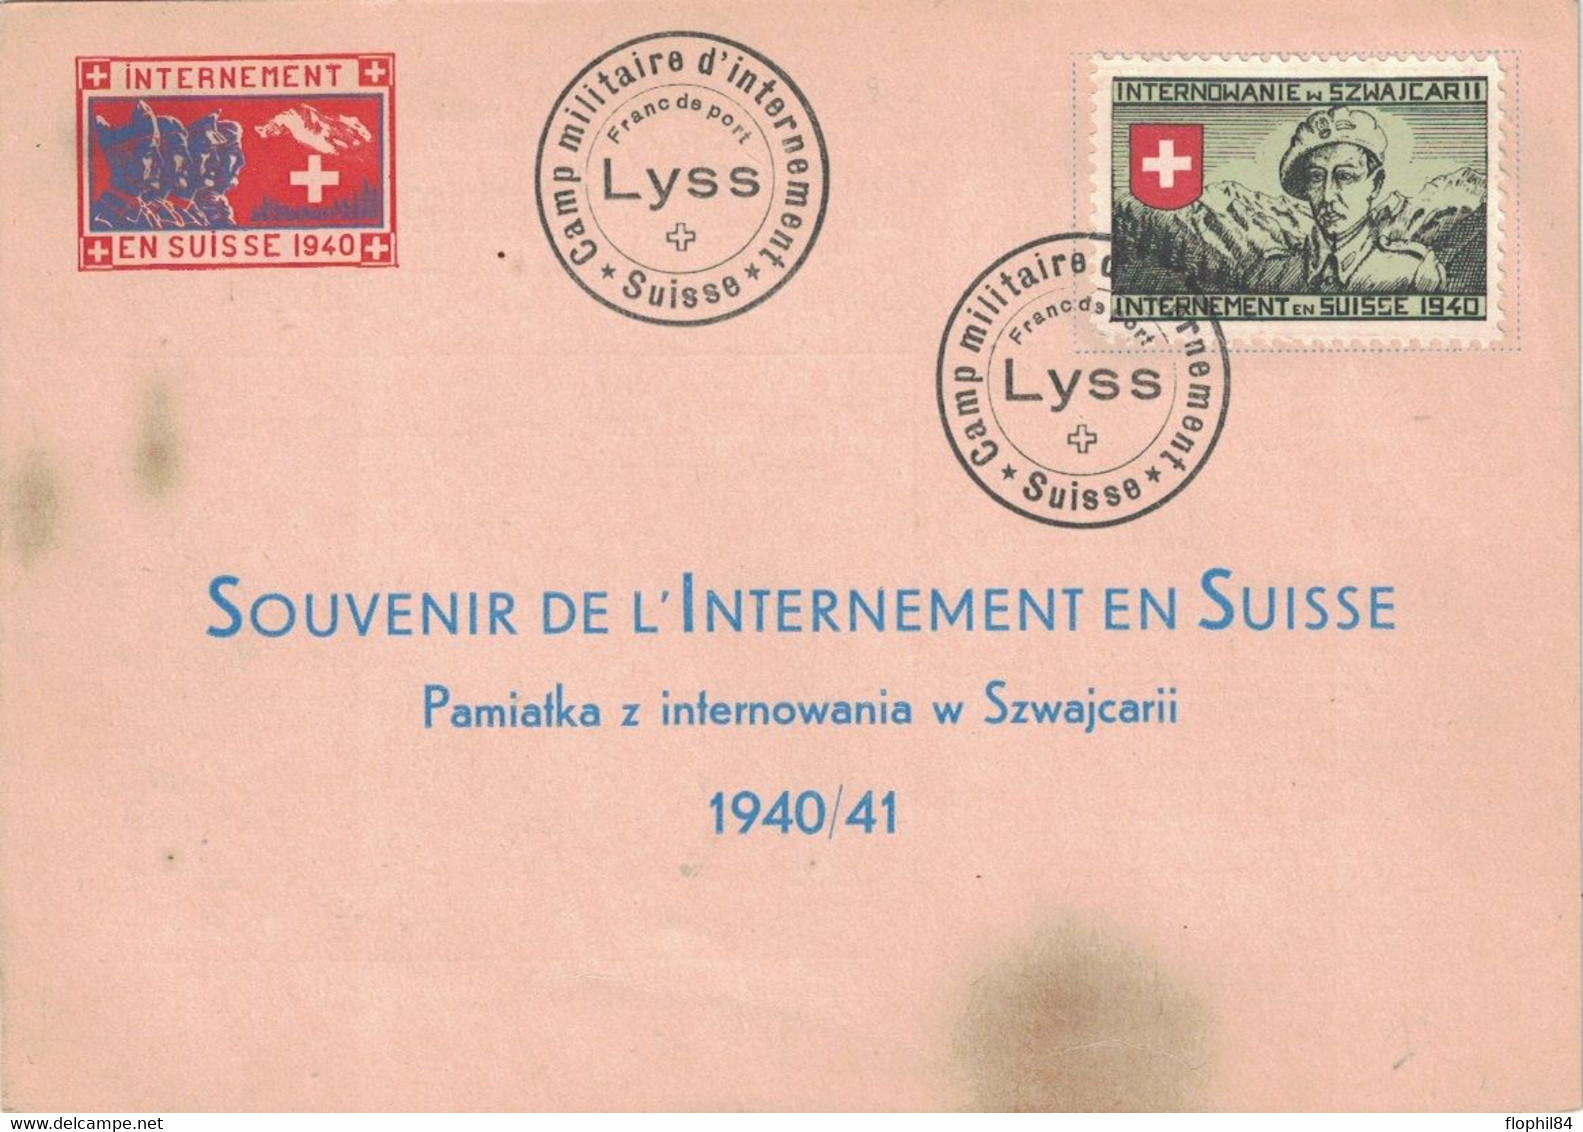 INTERNEMENT MILITAIRE EN SUISSE EN 1940 - ENVELOPPE AVEC VIGNETTE - CAMP DE LYSS. - Documents